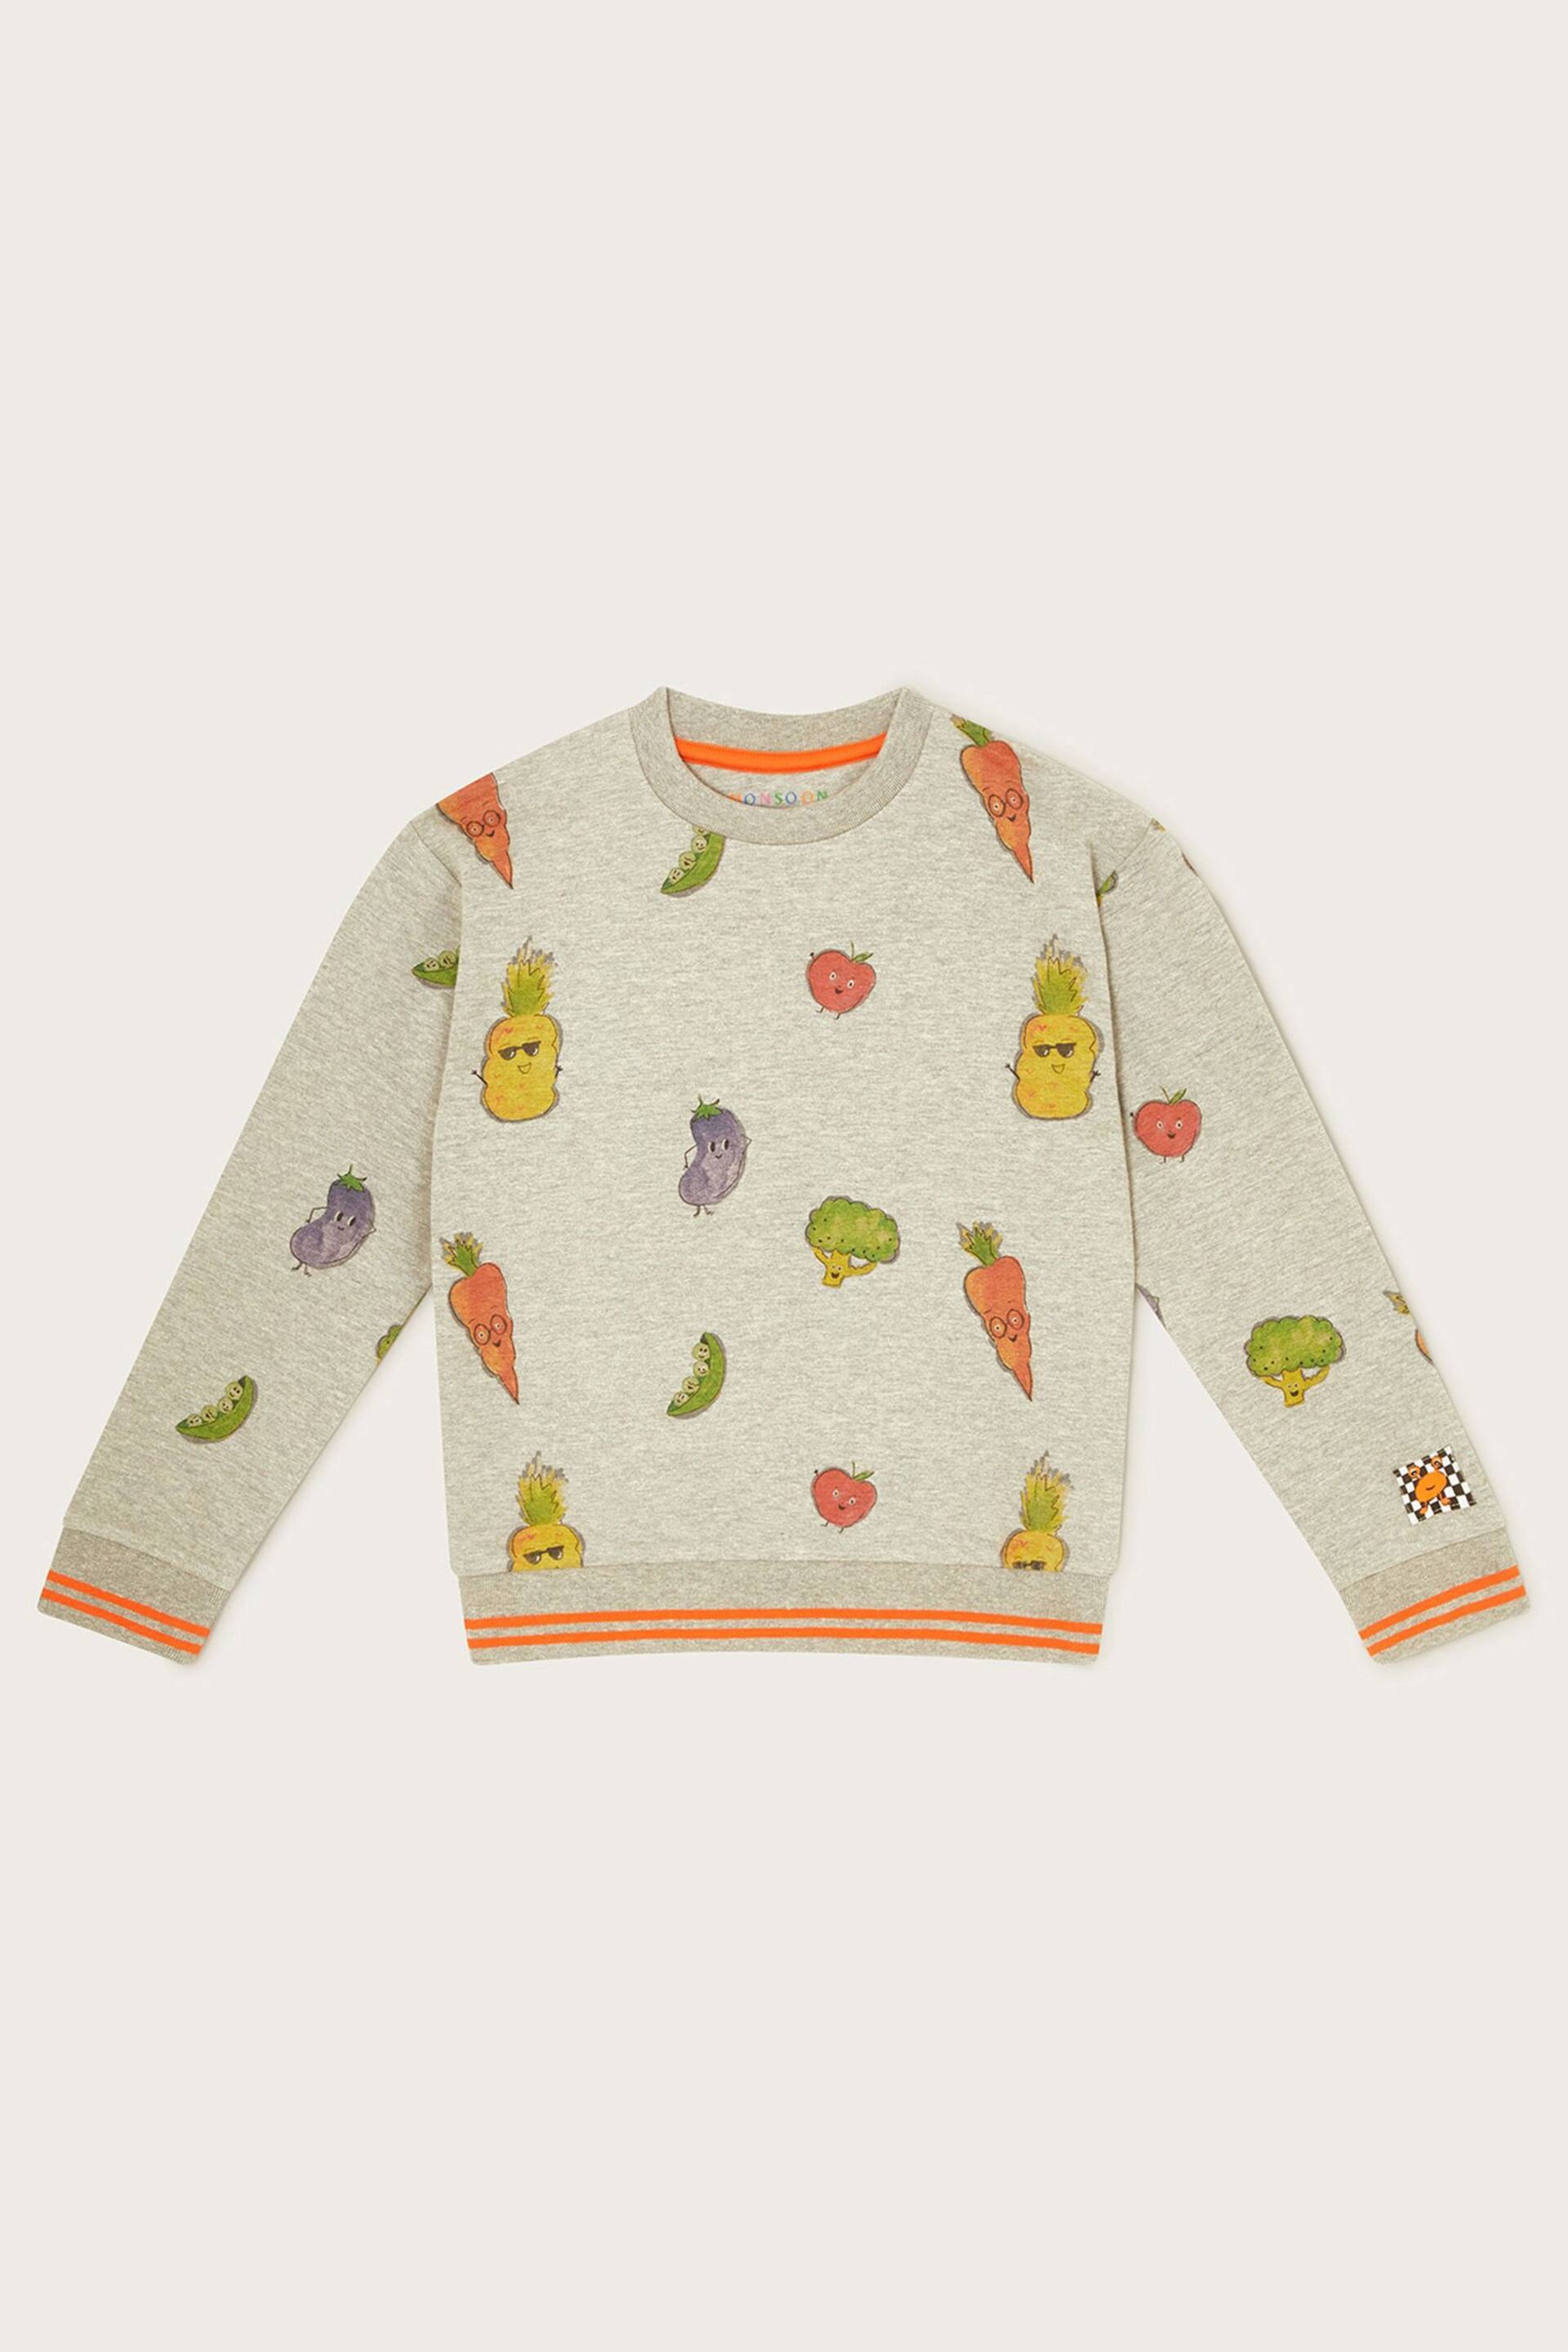 Monsoon Grey Fruit and Vegetable Print Sweatshirt - Image 1 of 3